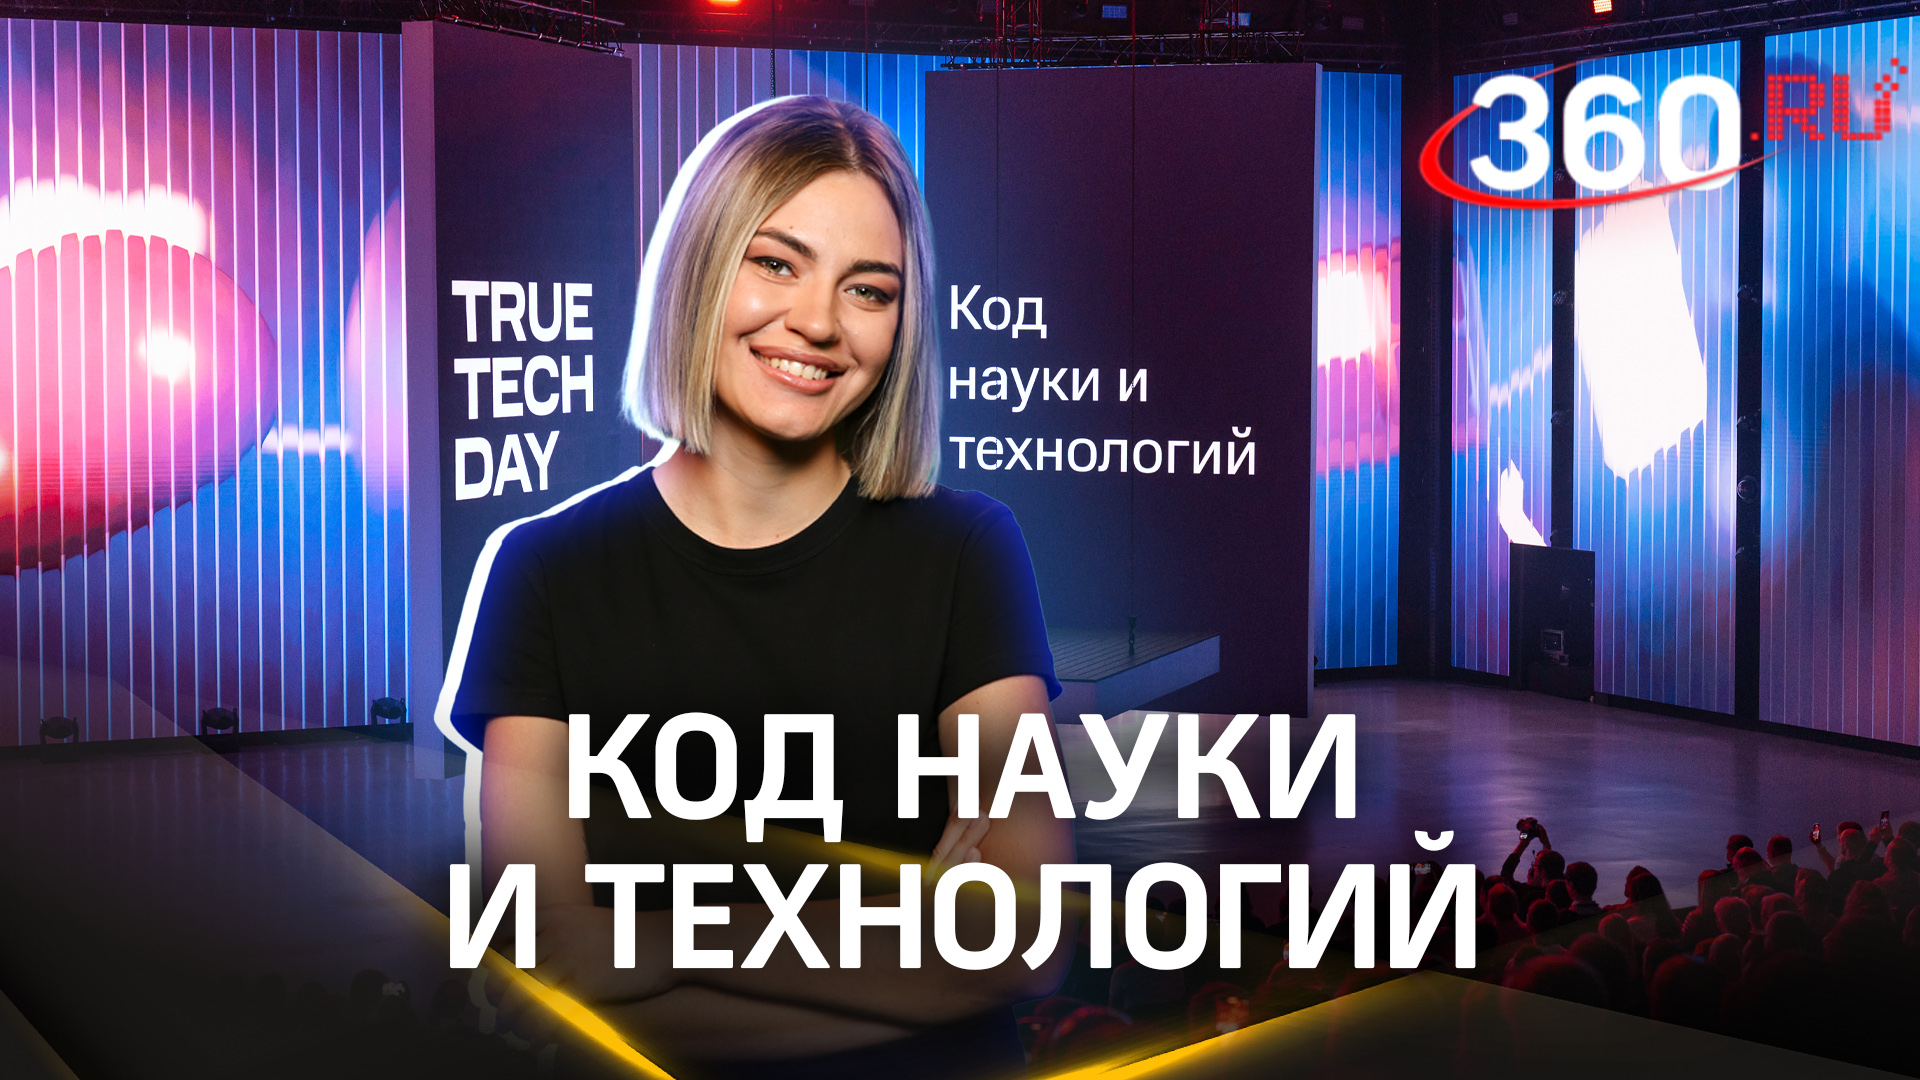 IT-конференция True Tech Day в Москве: как это было?